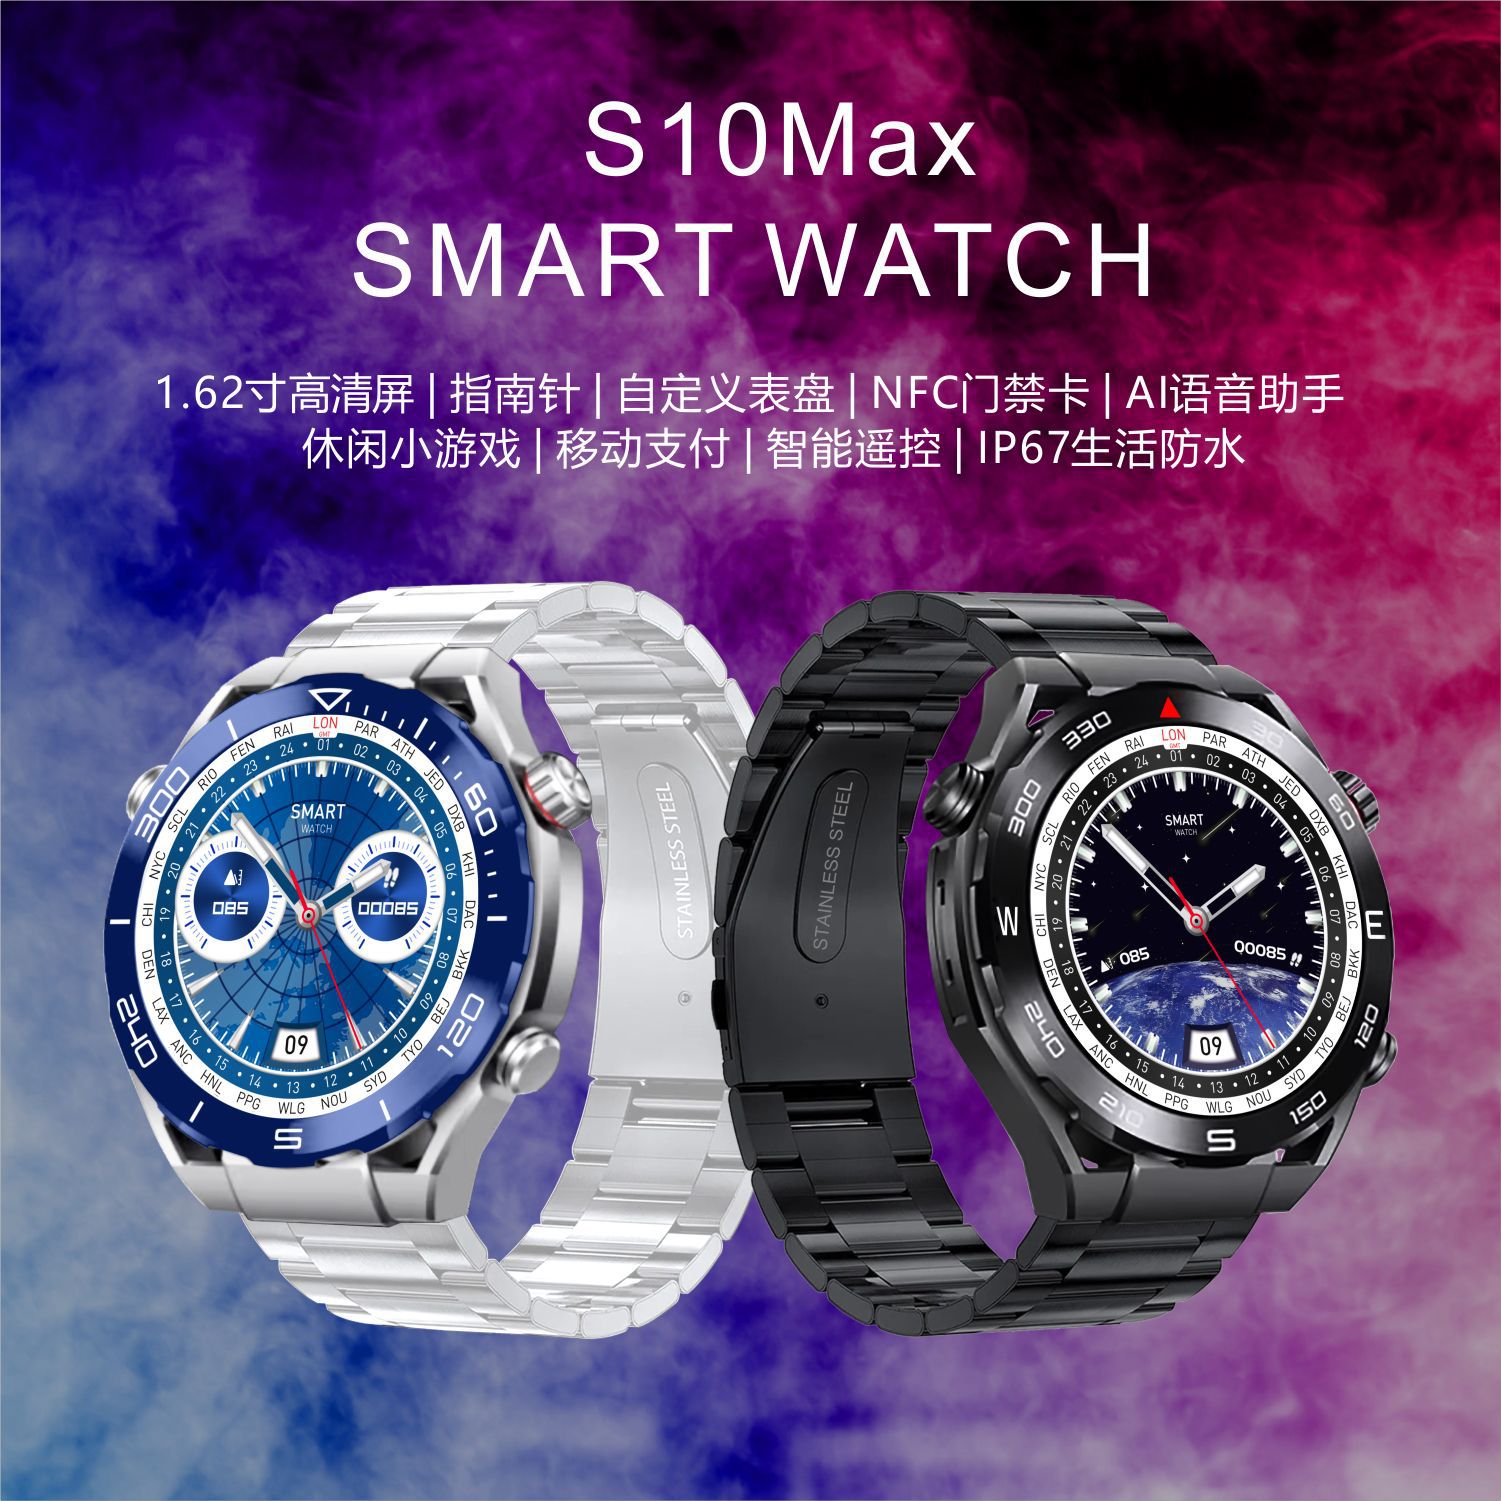 Đồng hồ thông minh s10max Đồng hồ thông minh theo dõi sức khỏe và thể thao NFC la bàn Màn hình tròn 1.62 inch